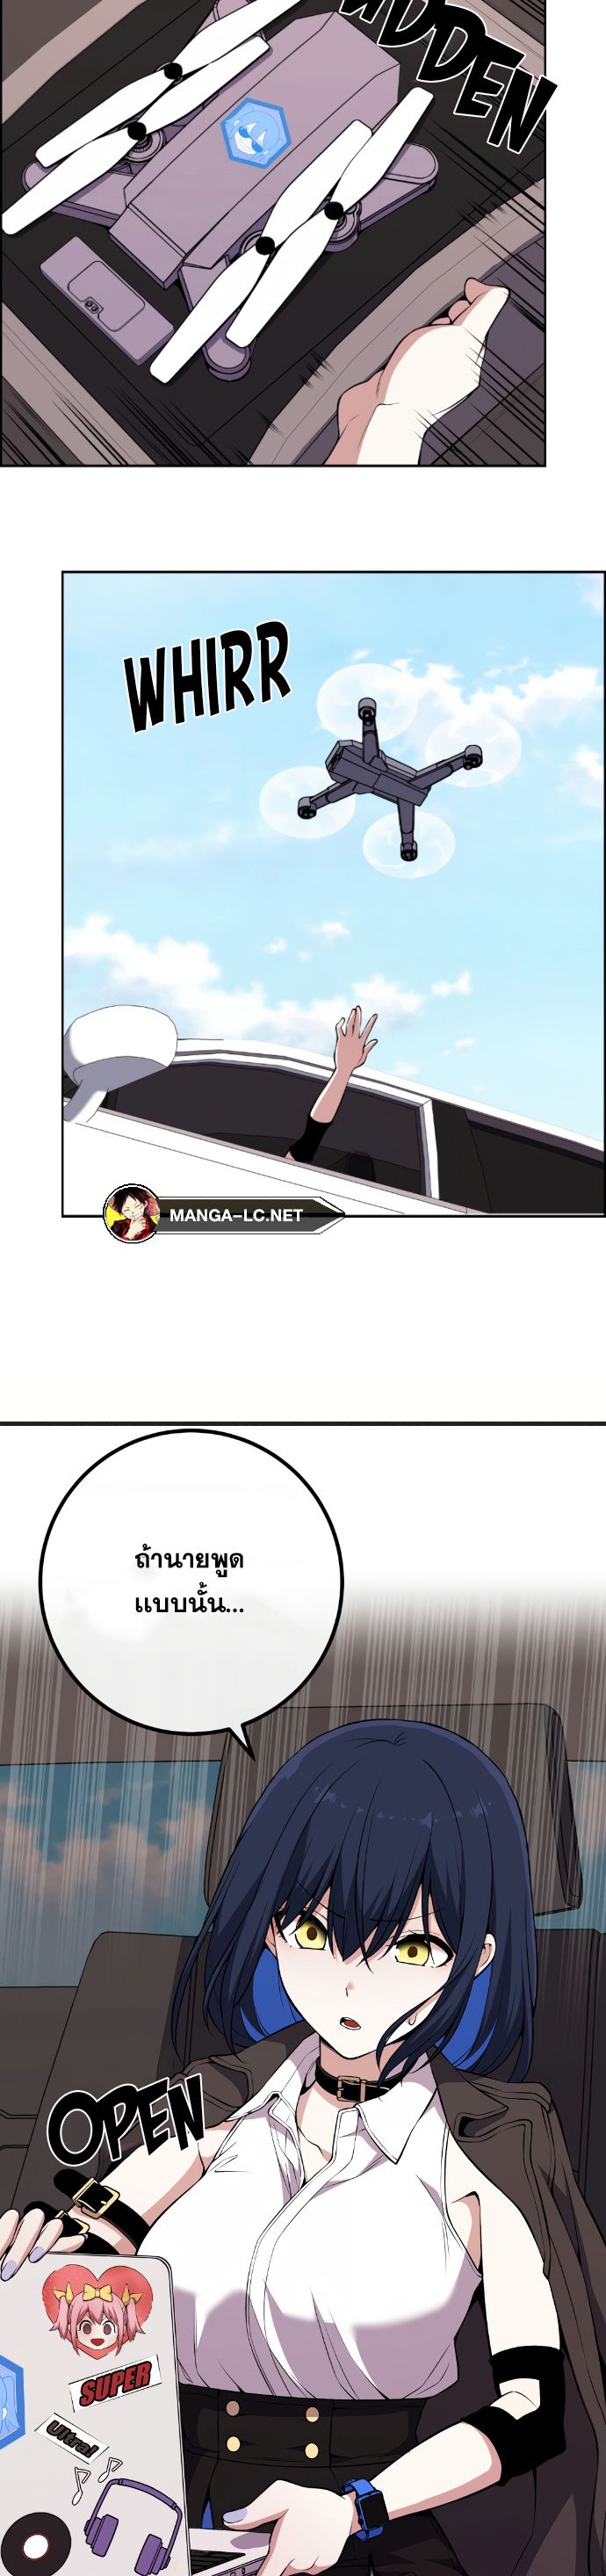 Webtoon Character Na Kang Lim ตอนที่ 135 (39)